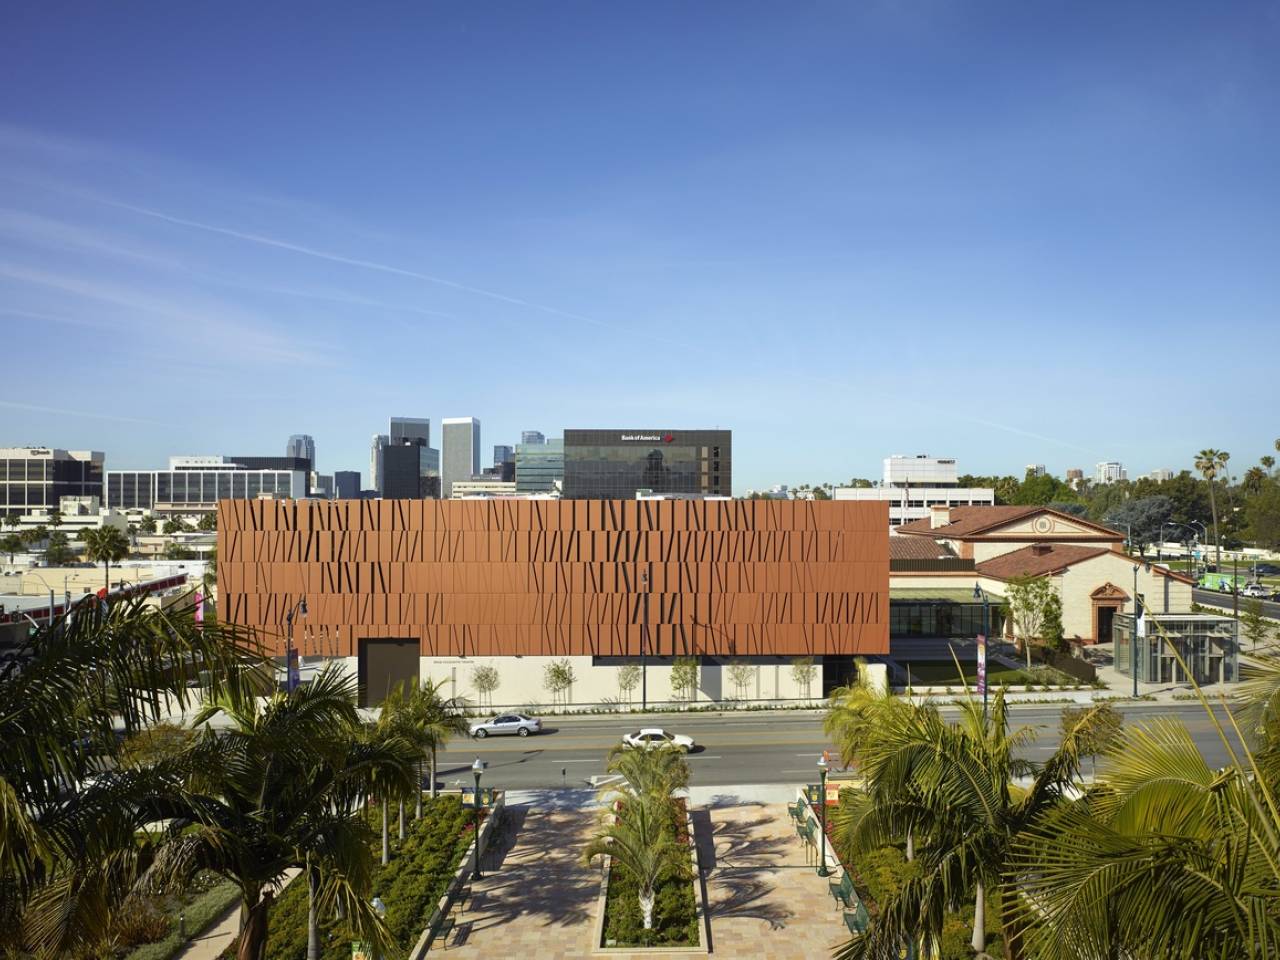 Wallis Annenberg Center in Beverly Hills, USA